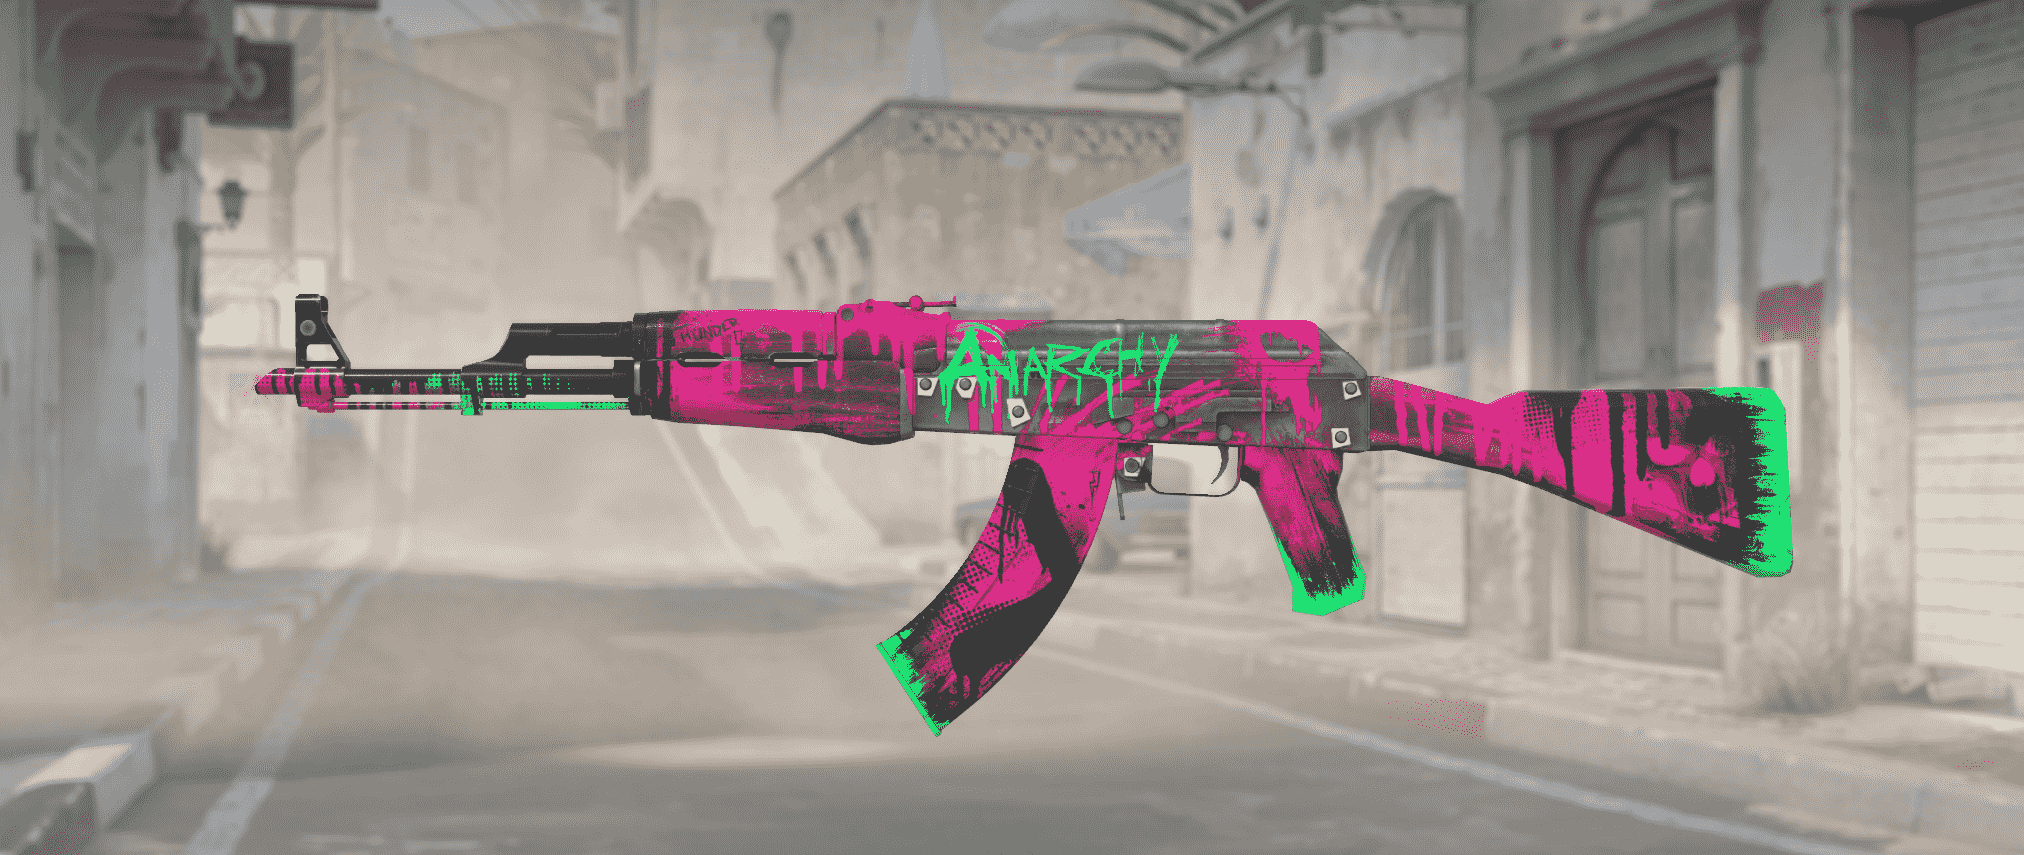 AK-47 rivoluzione al neon